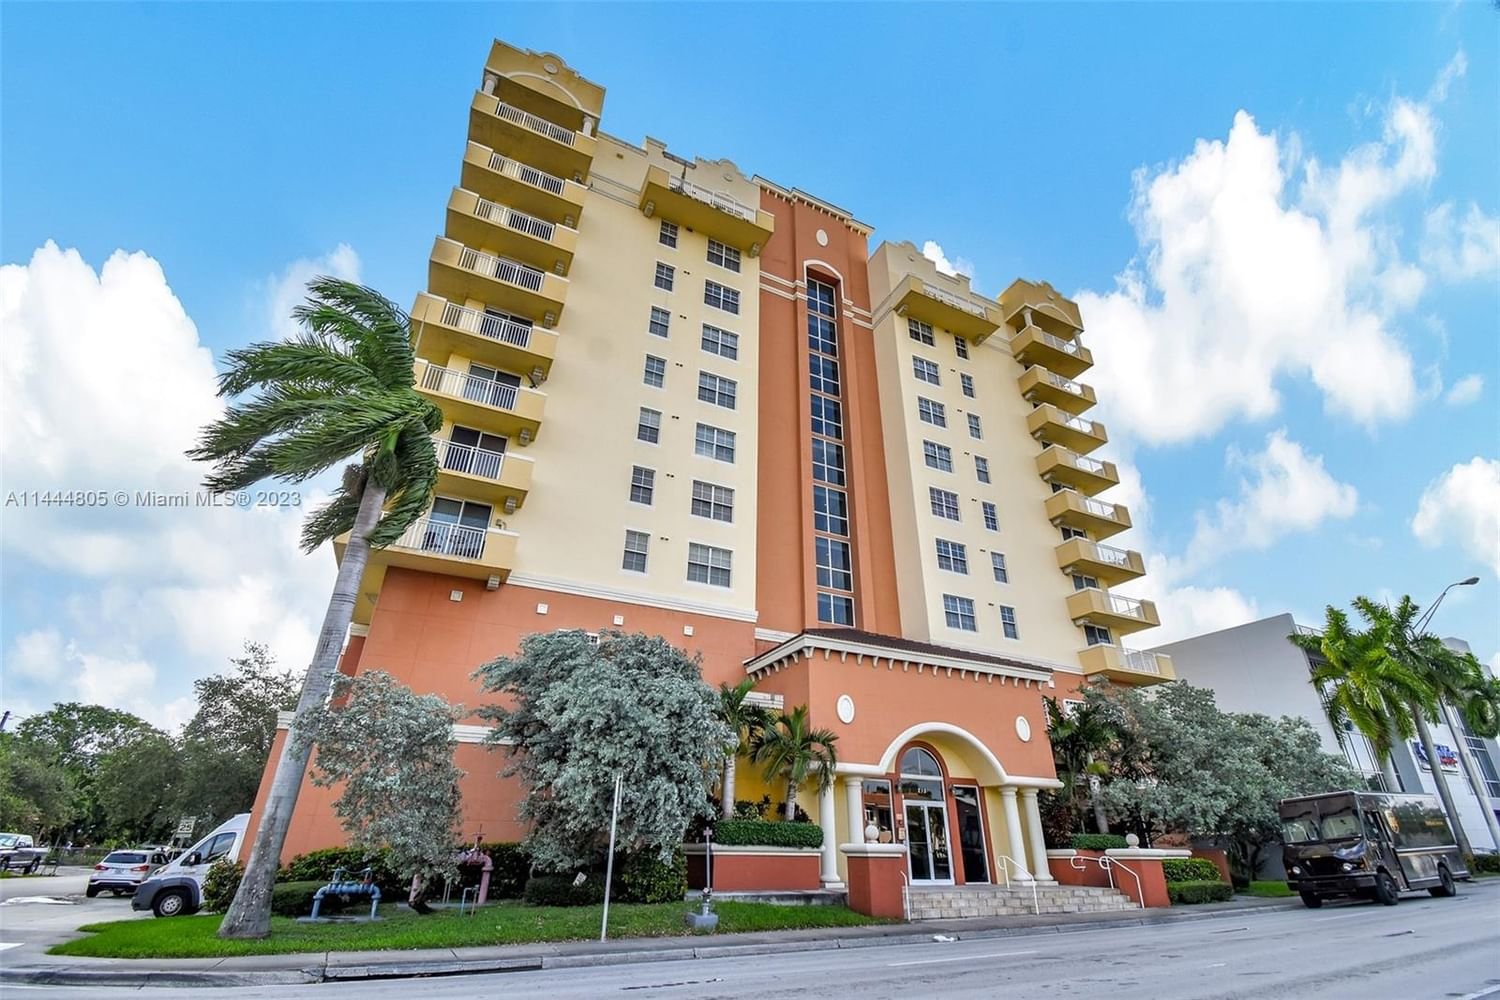 Real estate property located at 215 42nd Ave #403, Miami-Dade County, LEJEUNE PLAZA CONDO, Miami, FL